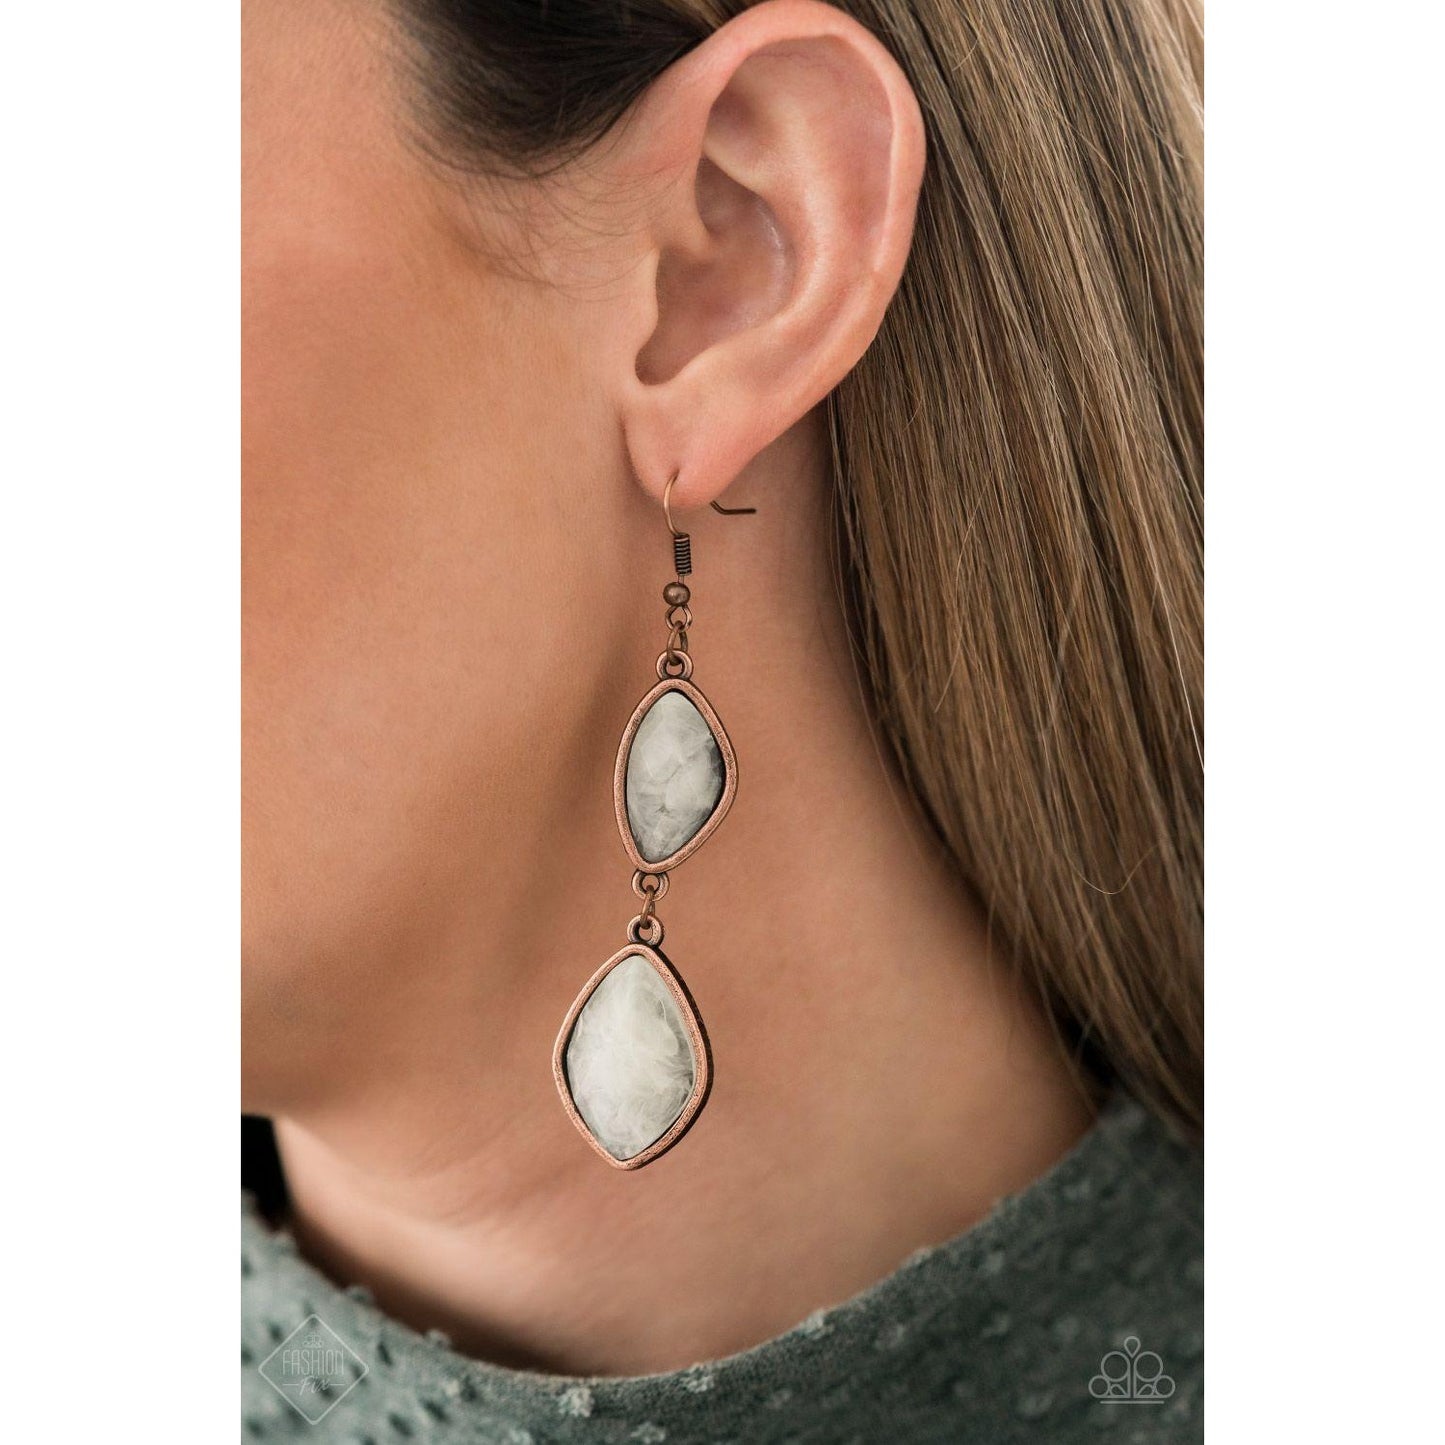 The Oracle Has Spoken - Copper Earrings Fashion FIx 719